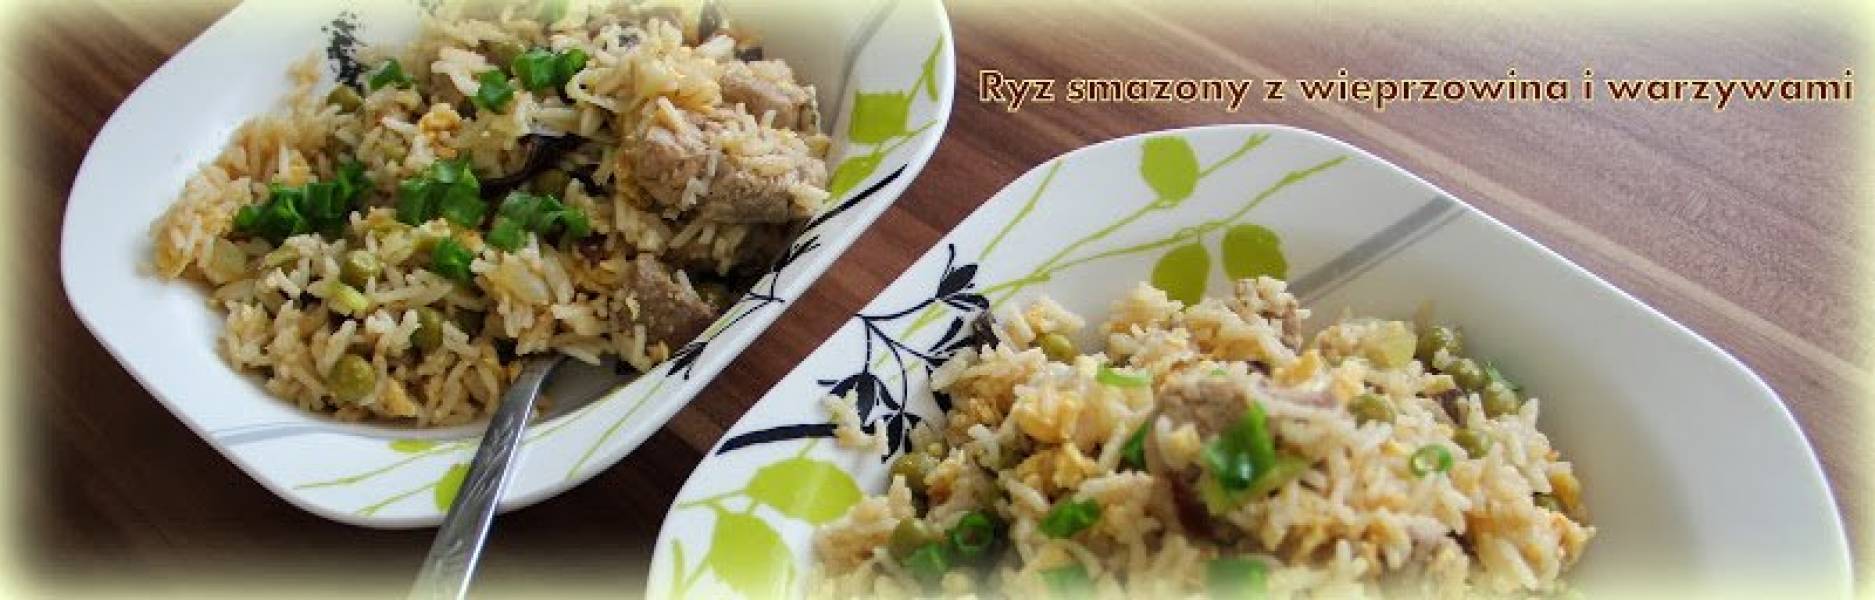 Ryż smażony z wieprzowiną i warzywami